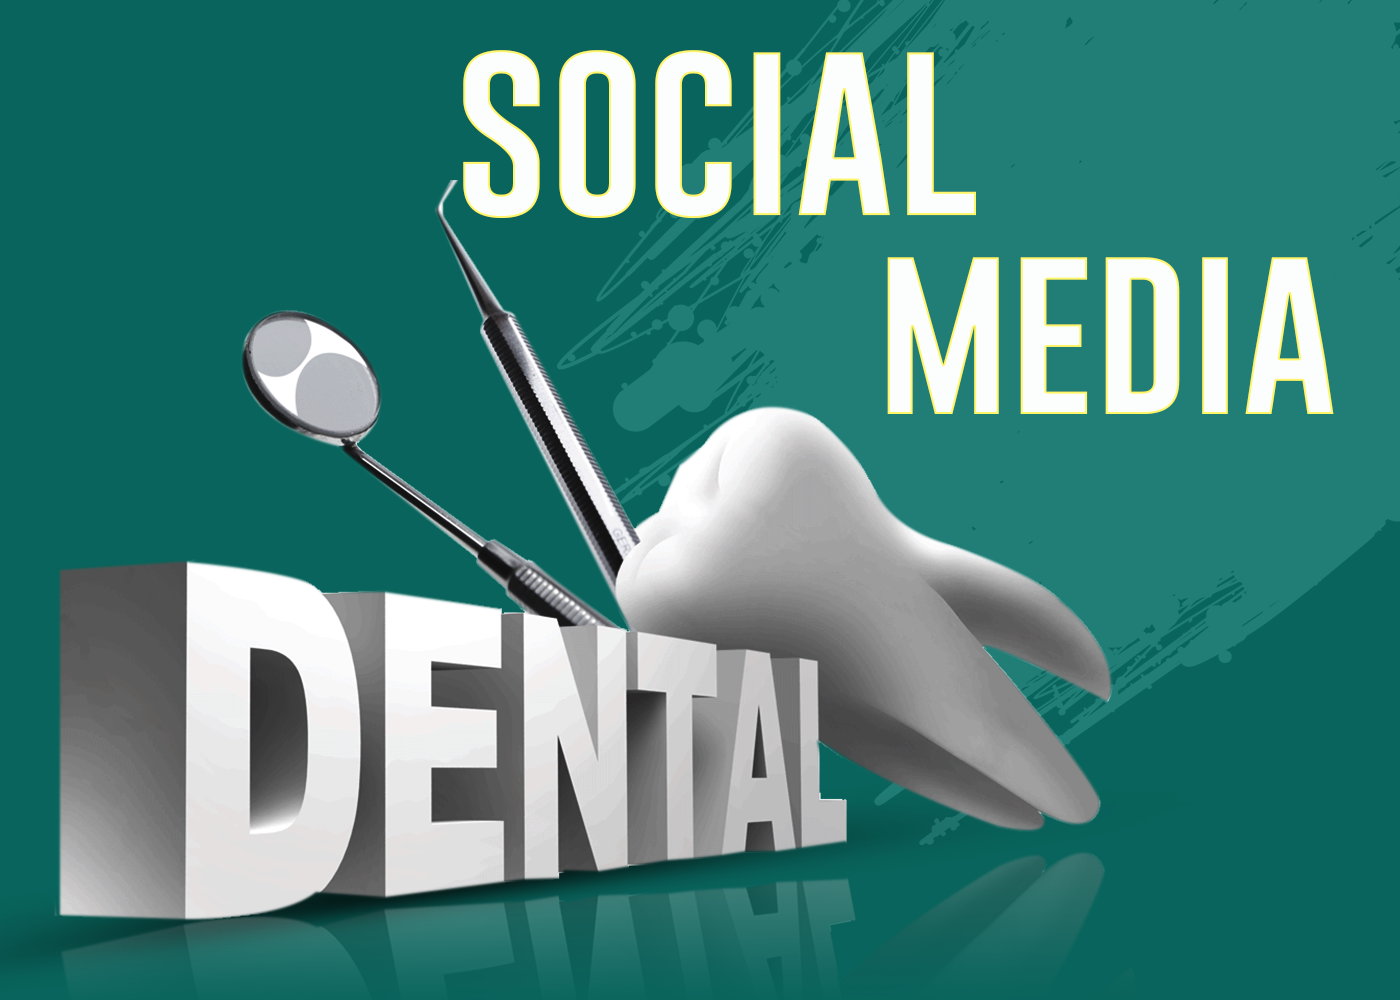 Advertising  dental designs graphic inspiration social social-media teeth